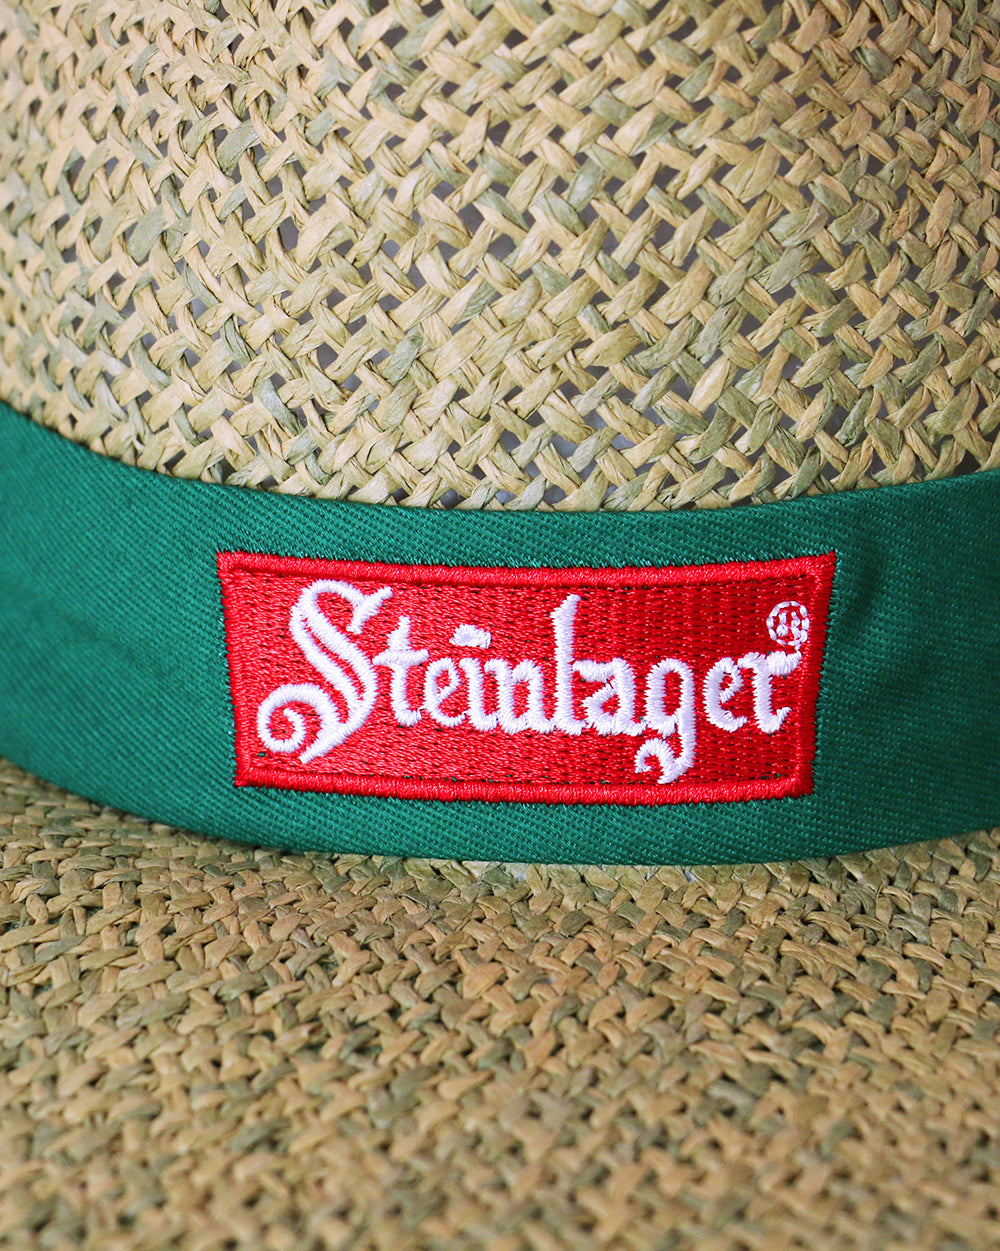 Steinlager Straw Wide Brim Hat -  Beer Gear Apparel & Merchandise - Speights - Lion Red - VB - Tokyo Dy merch